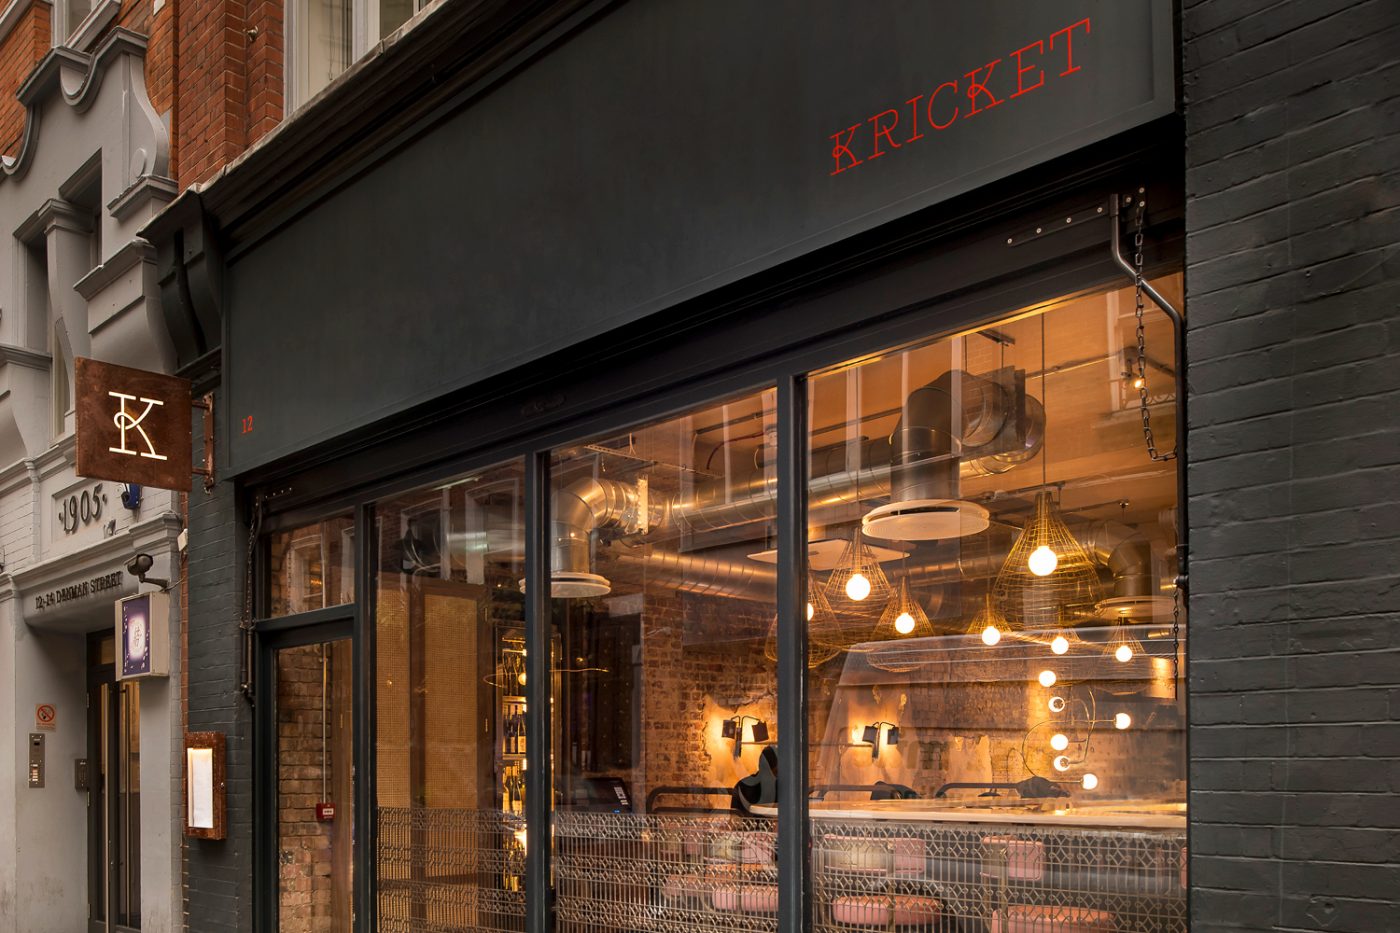 Kricket Soho London Bar Restaurant Design Interiors Outside Run